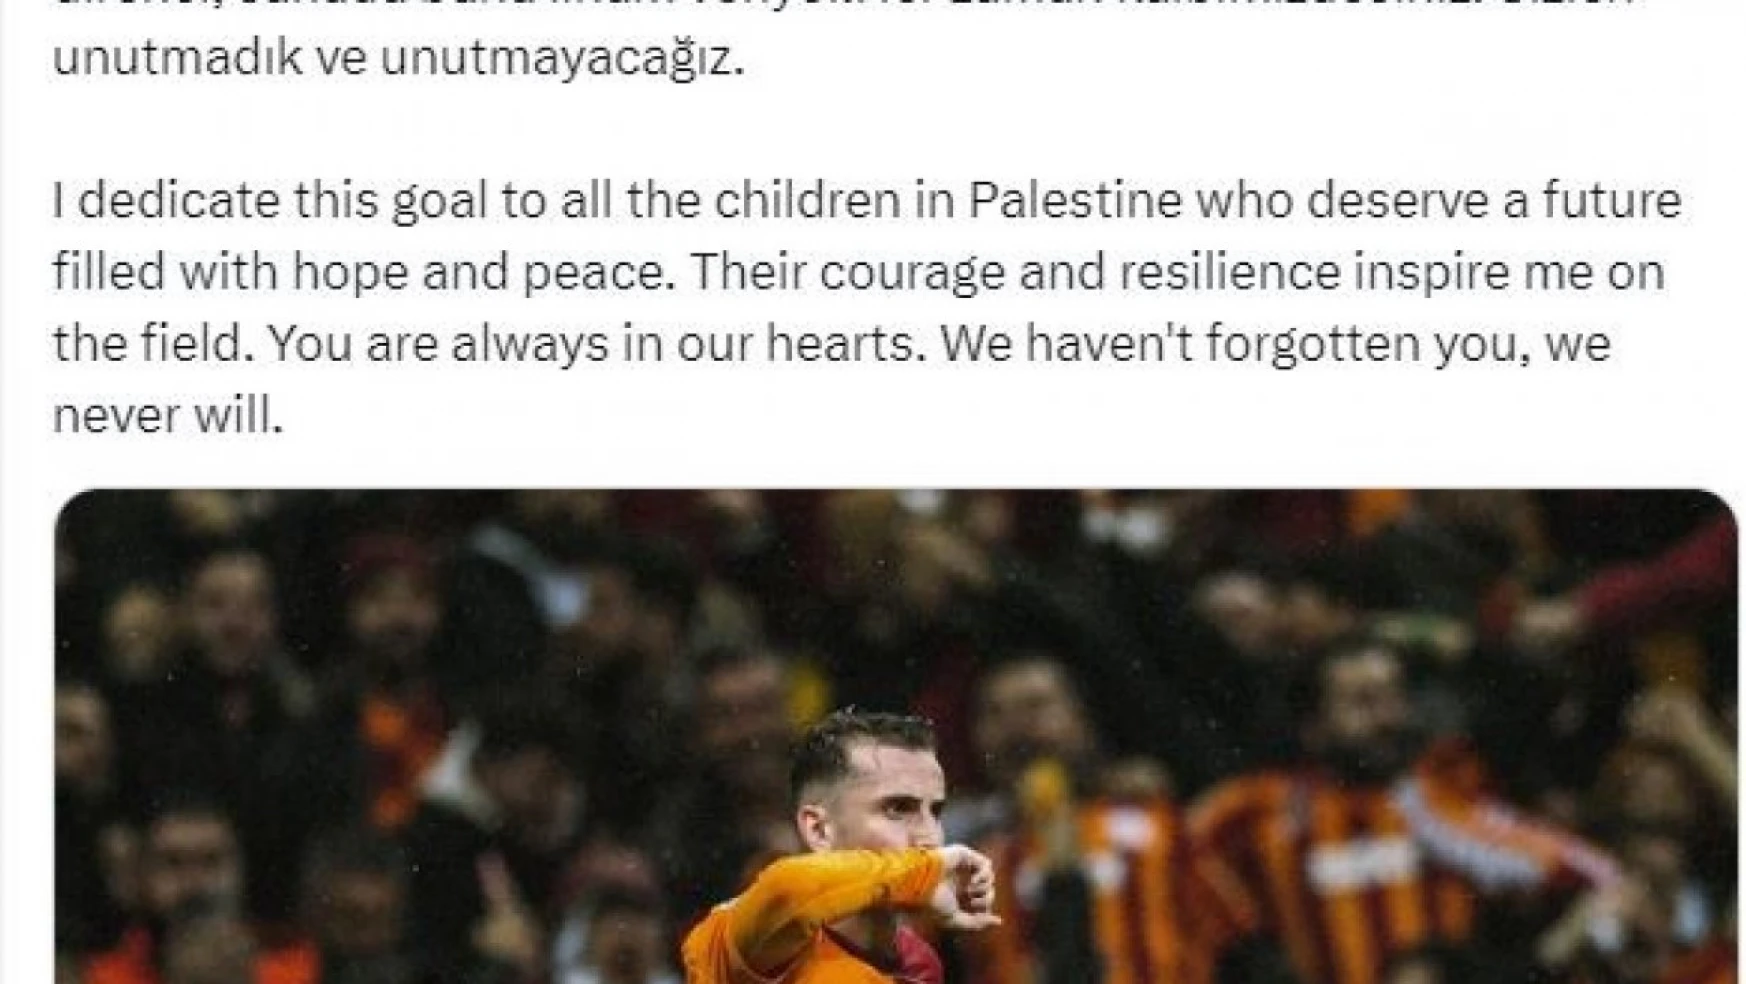 Kerem Aktürkoğlu, attığı golü Filistinli çocuklara armağan etti